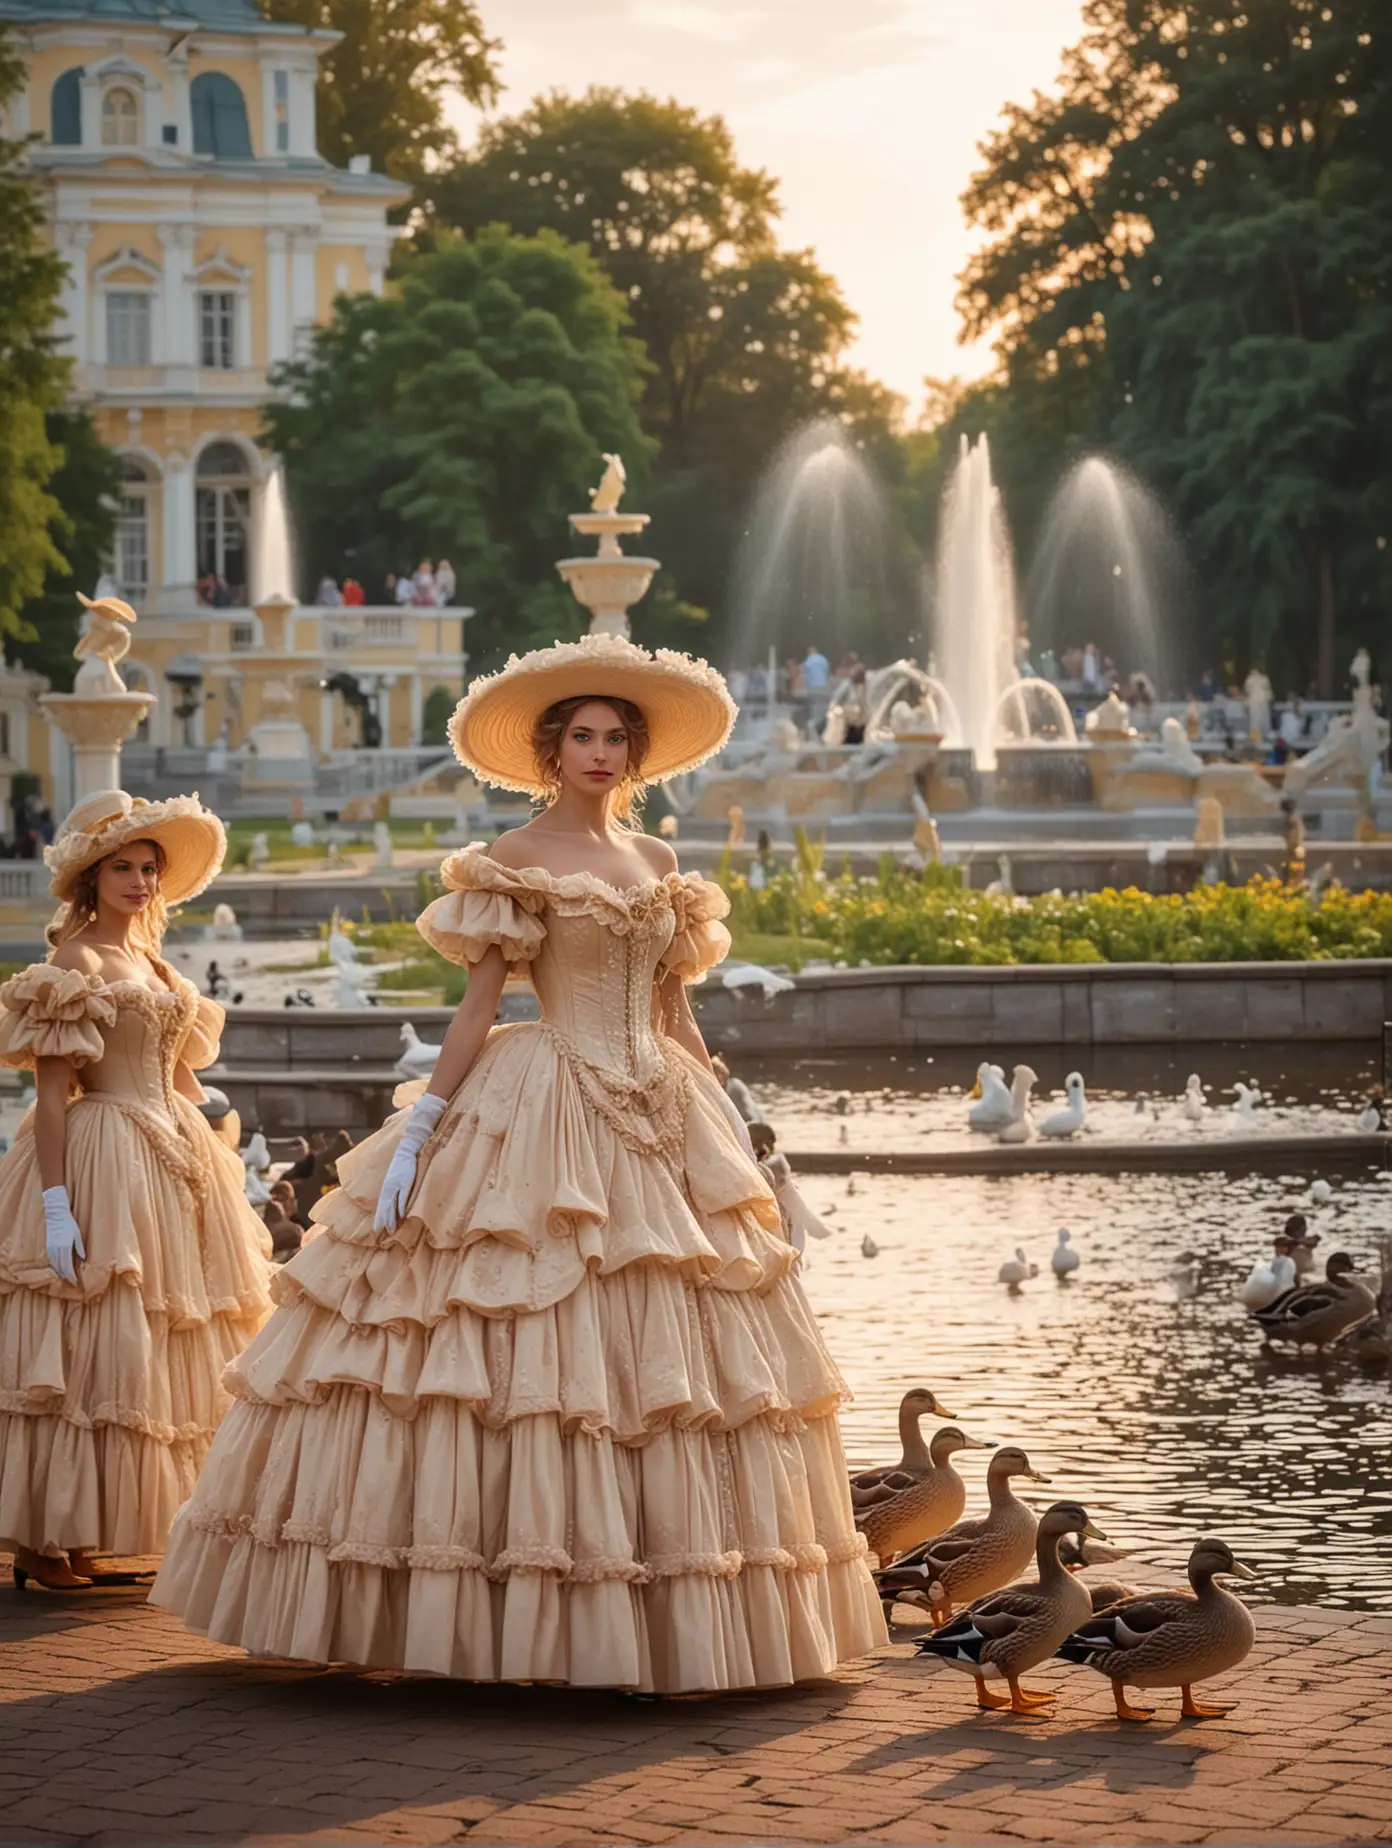 Утки в человеческой одежде, утки в шляпках и платьях на фоне парка петергофа с фонтанами в верернем освещении